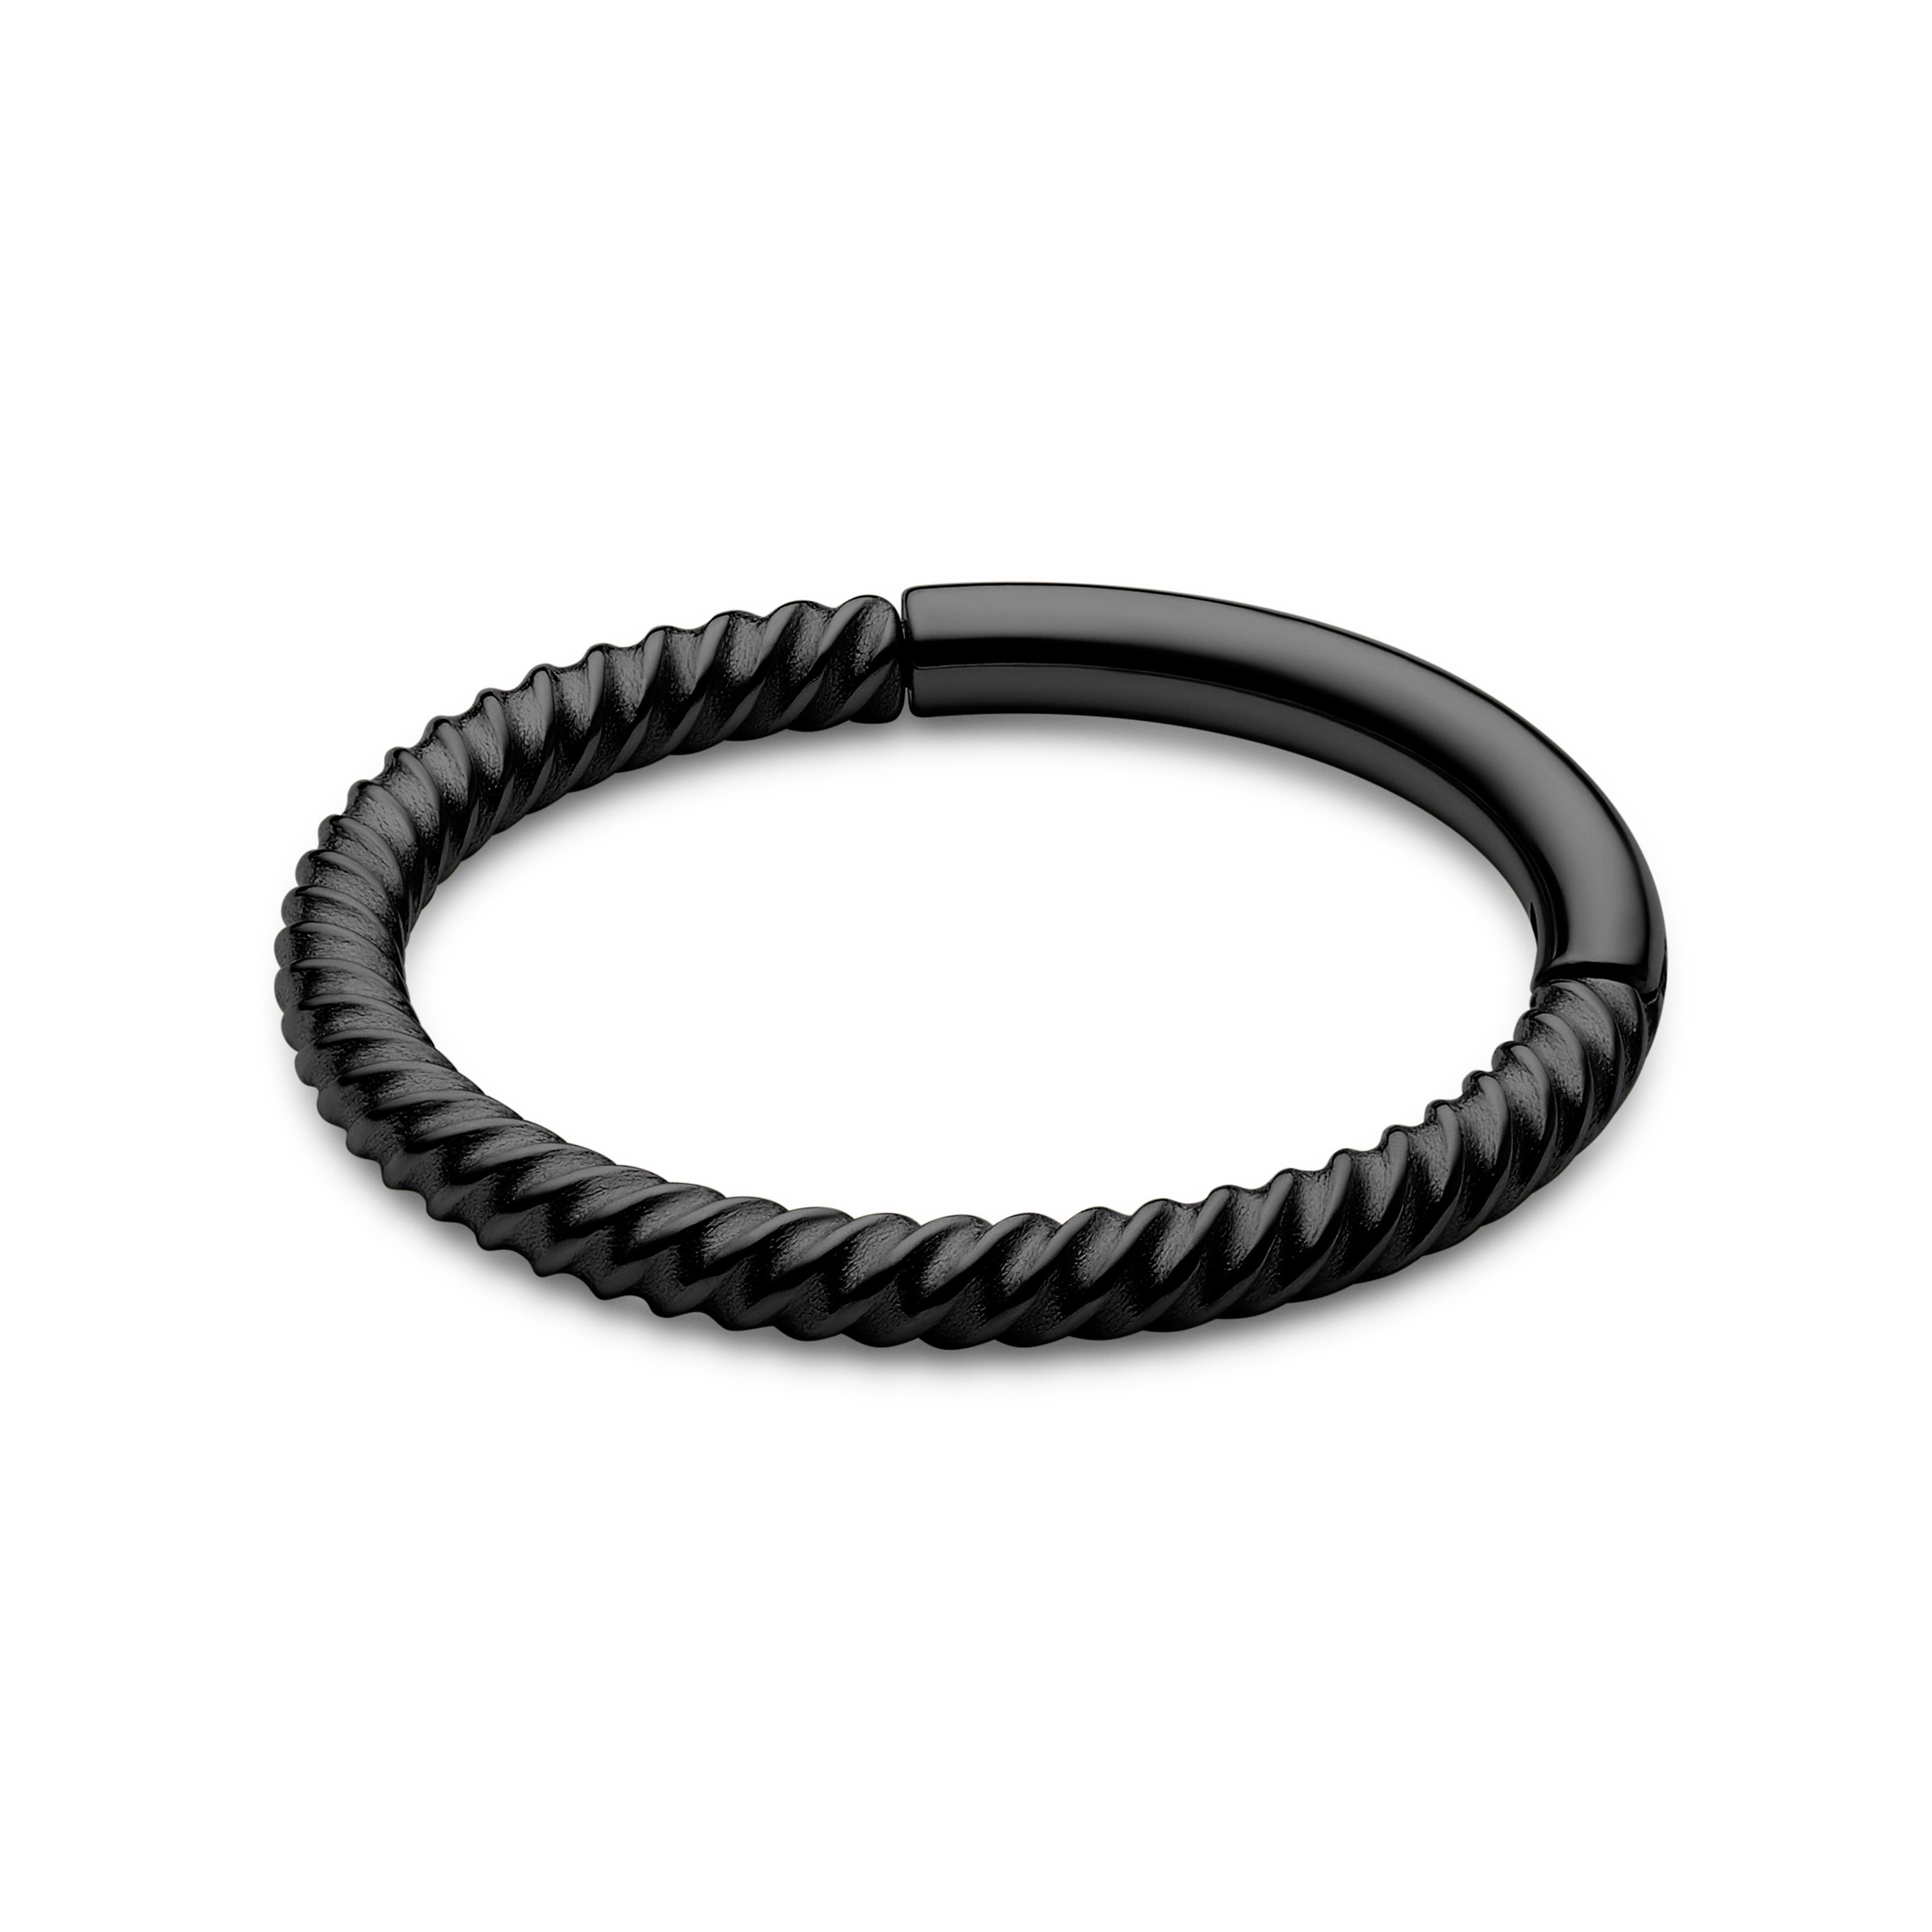 Piercing aro estilo cable de acero quirúrgico negro de 10 mm 